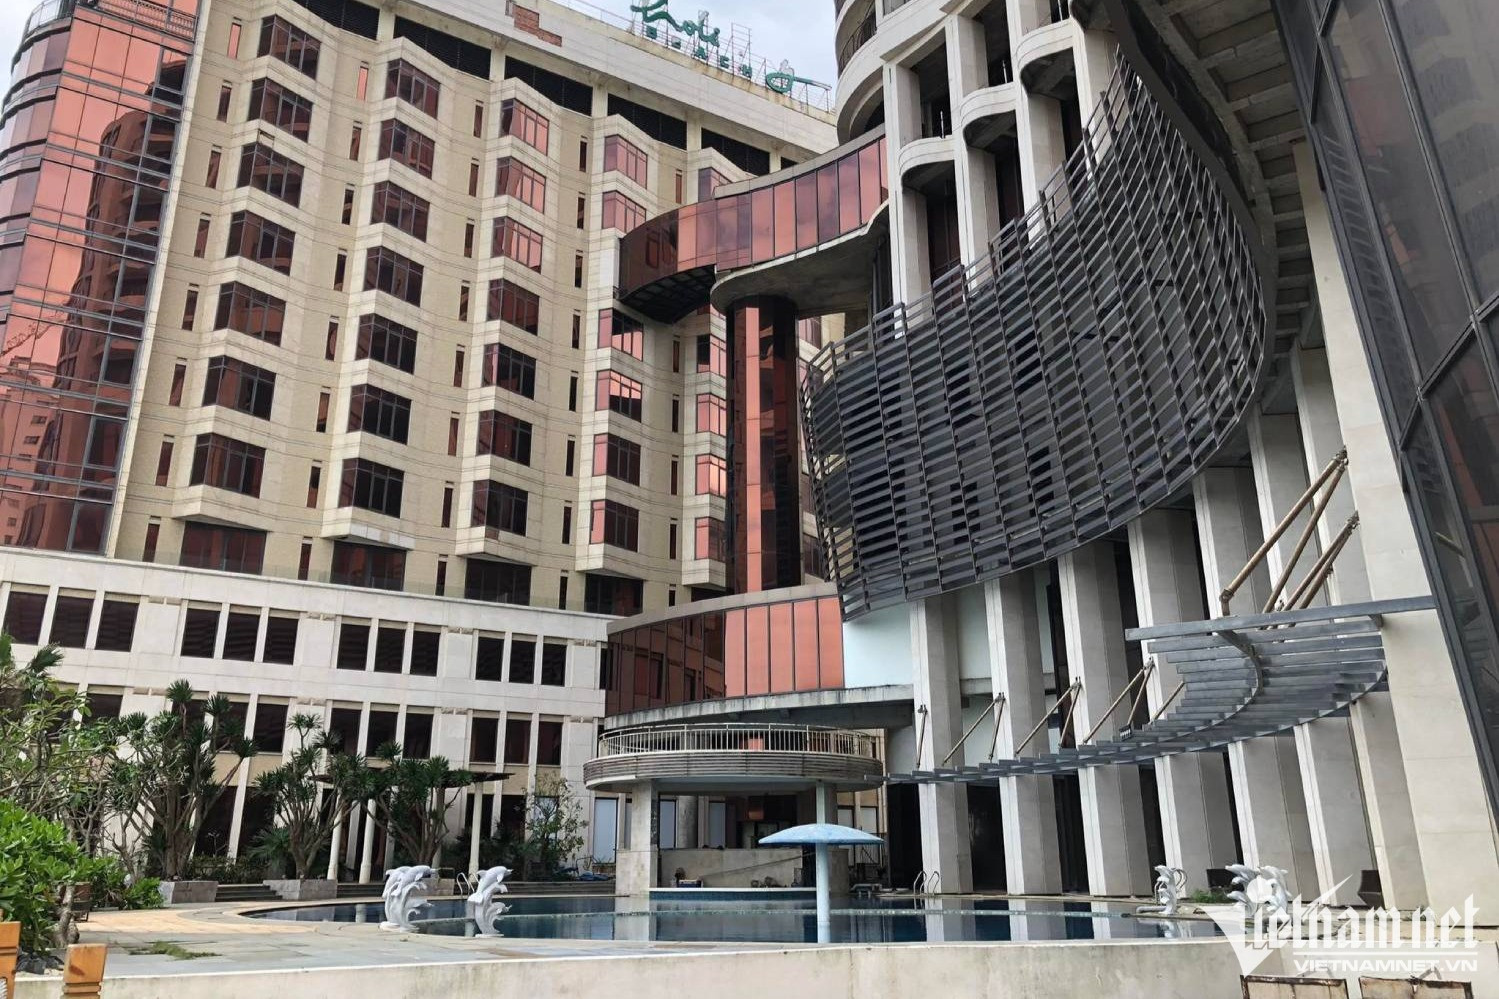 Dịch qua, hè tới nhưng loạt khách sạn ở Đà Nẵng vẫn đóng cửa im lìm